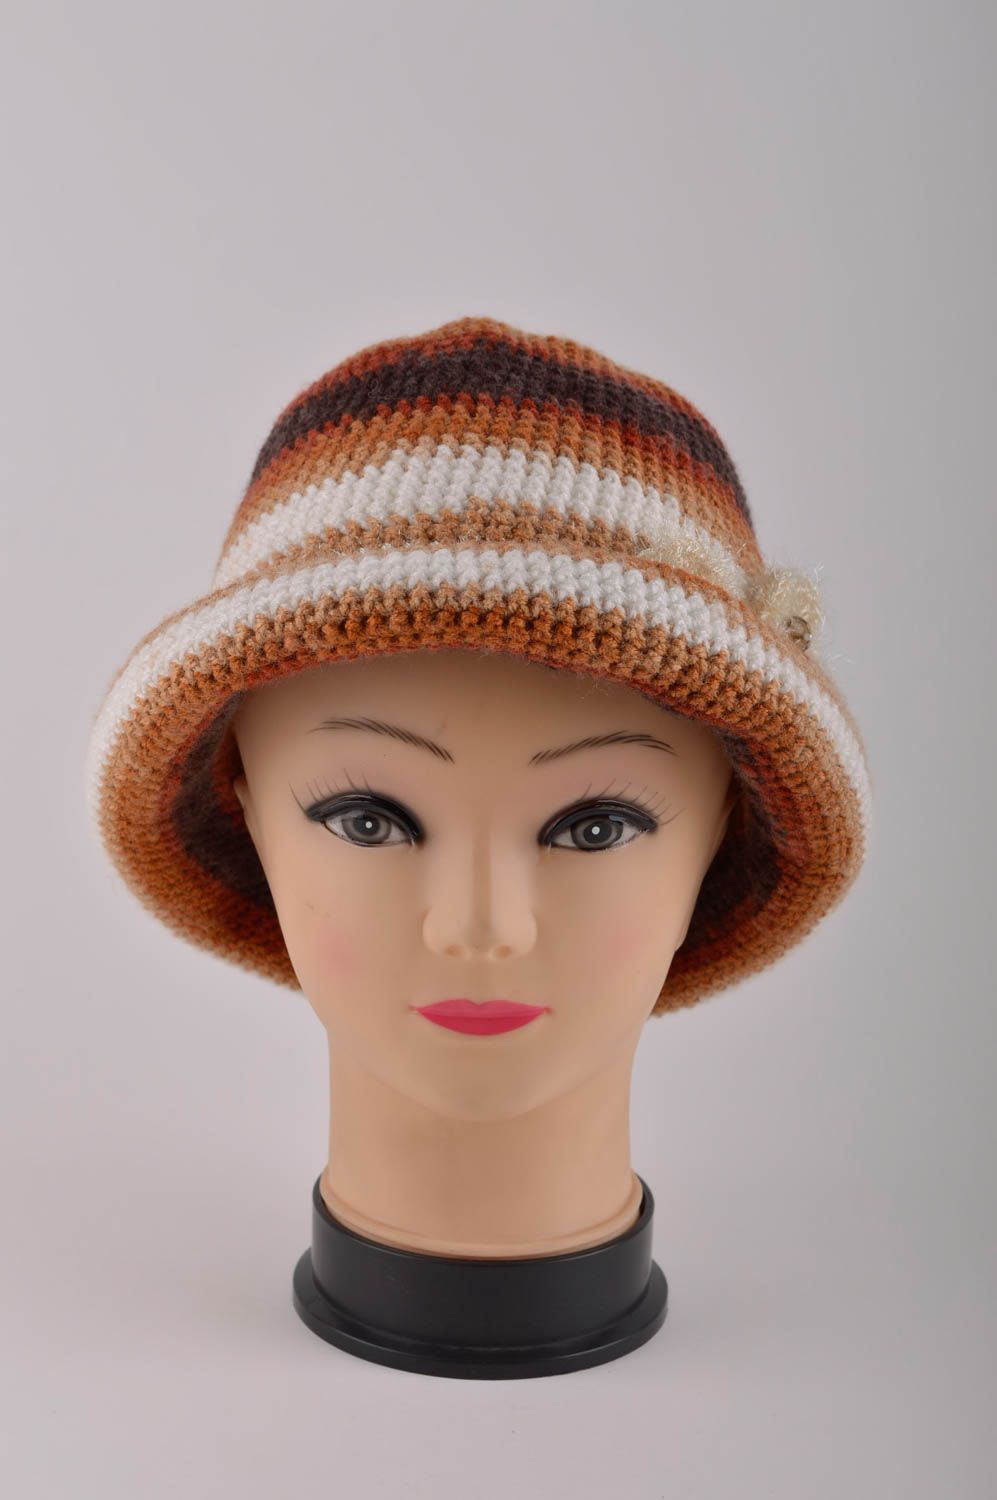 Вязаная шляпа ручной работы зимняя шапка красивая вязаная шапка женская стильная фото 3